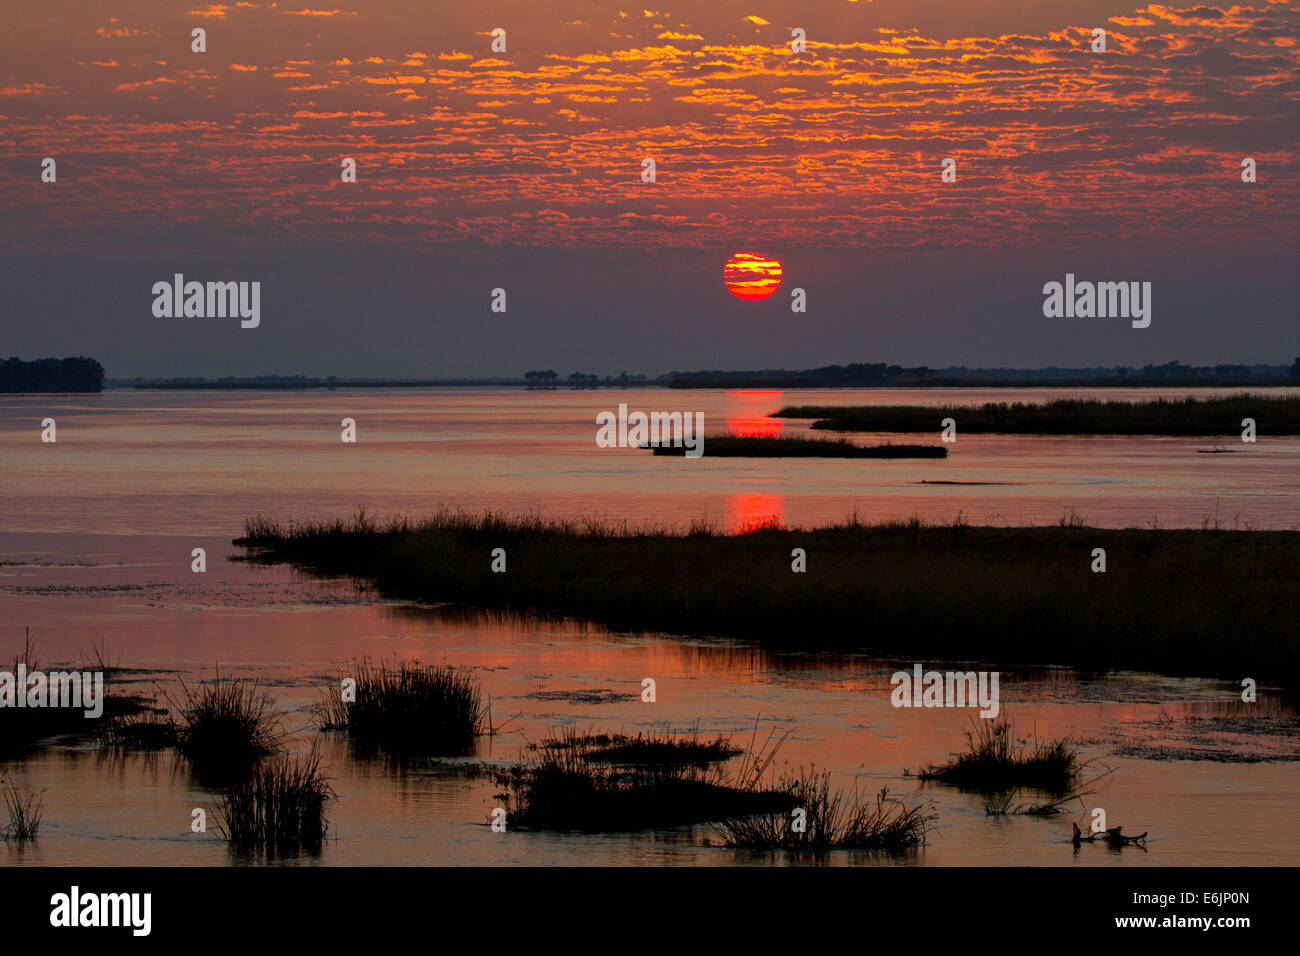 Sunrise over the Zambezi River, Zambia Stock Photo